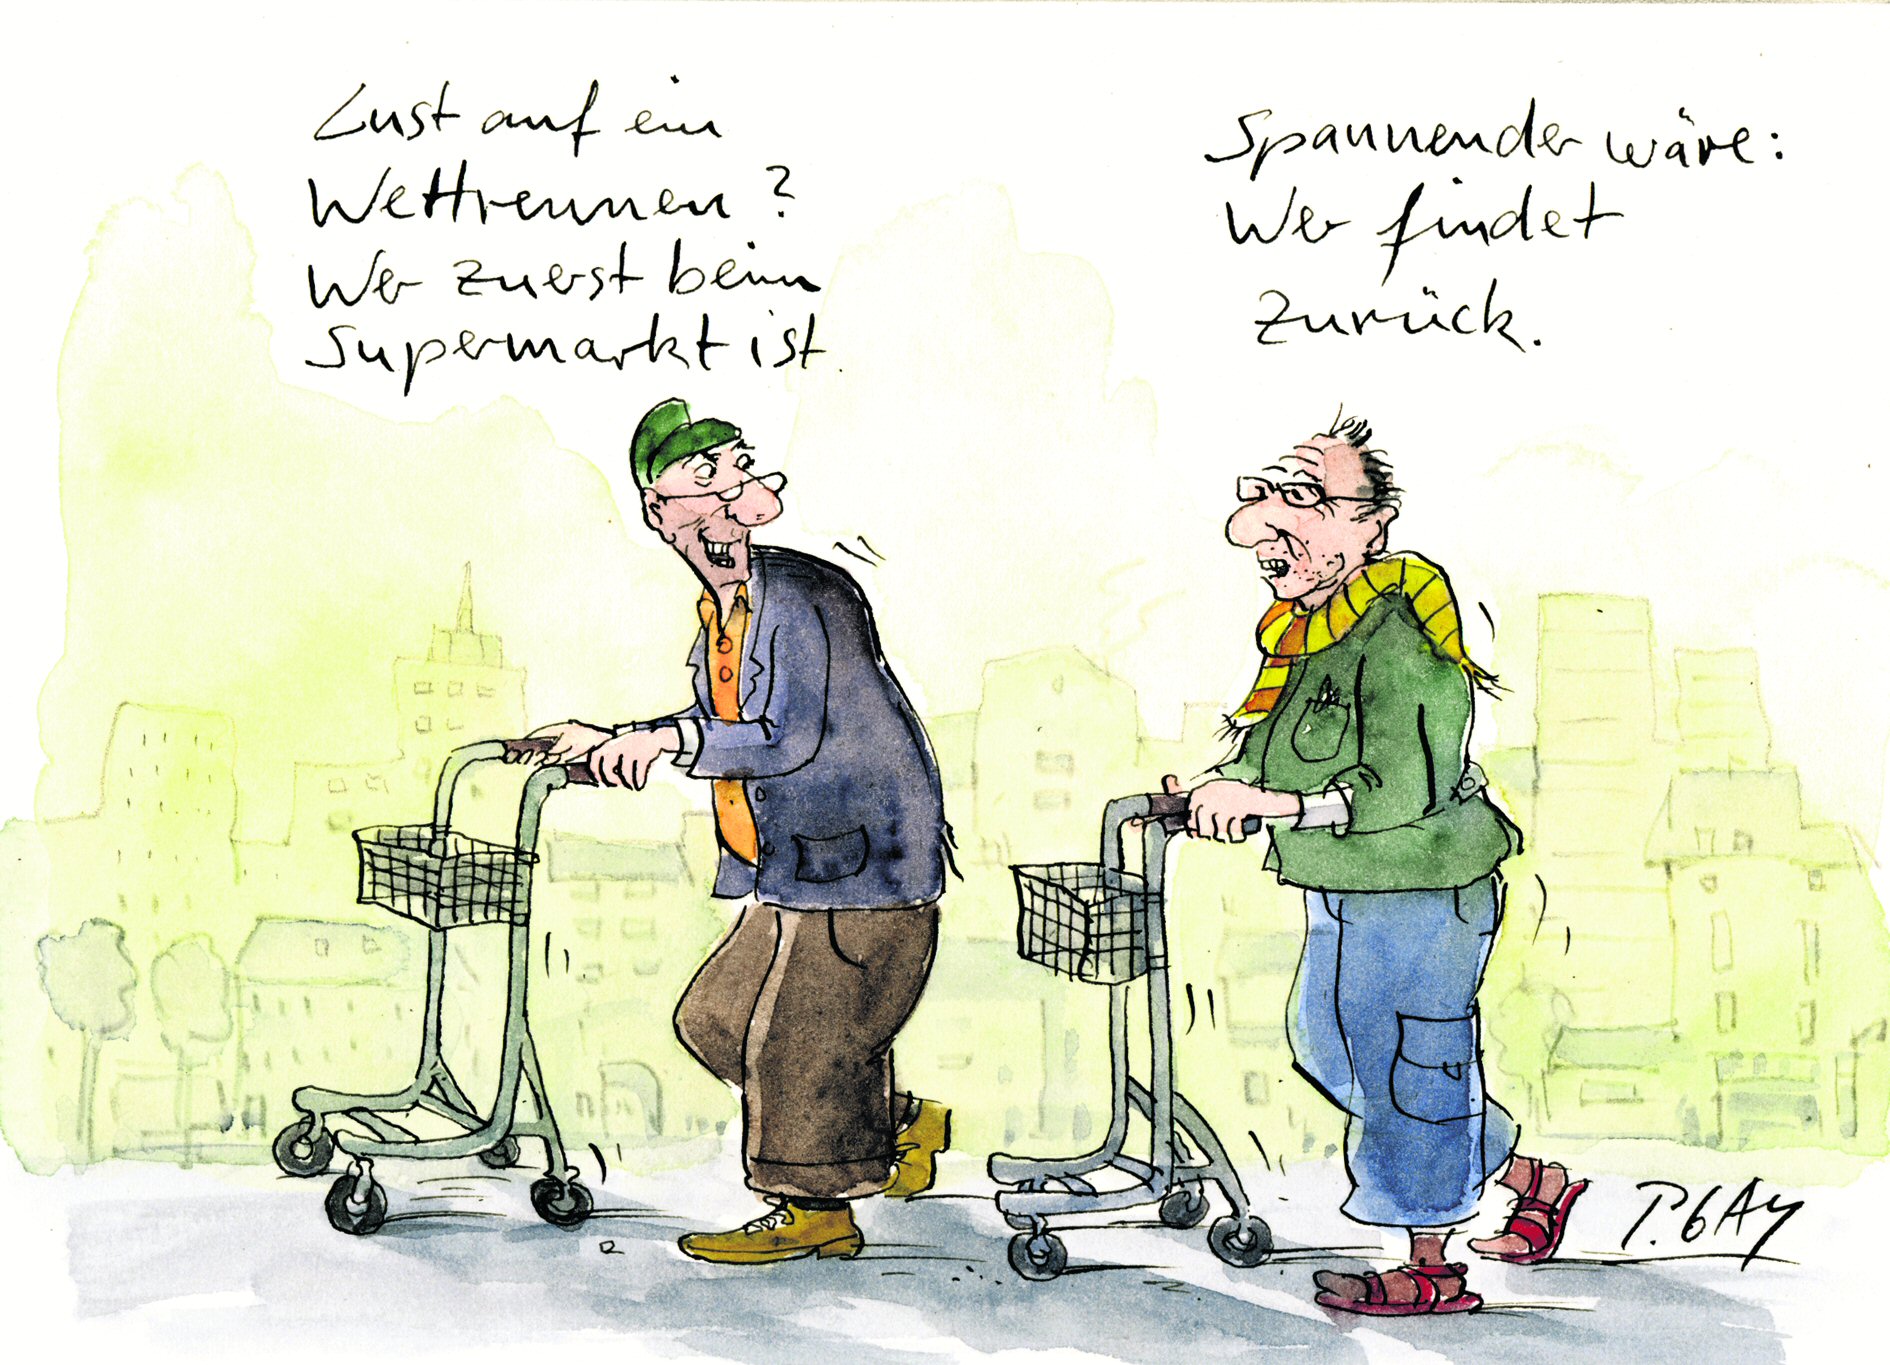 Humor im Zusammenhang mit Demenz – ist das erlaubt? Ja, findet Cartoonist Peter Gaymann und bringt eine Situationskomik ins Bild, die – ohne verletzend zu sein – zum Lachen bringt. (c) Peter Gaymann, Köln